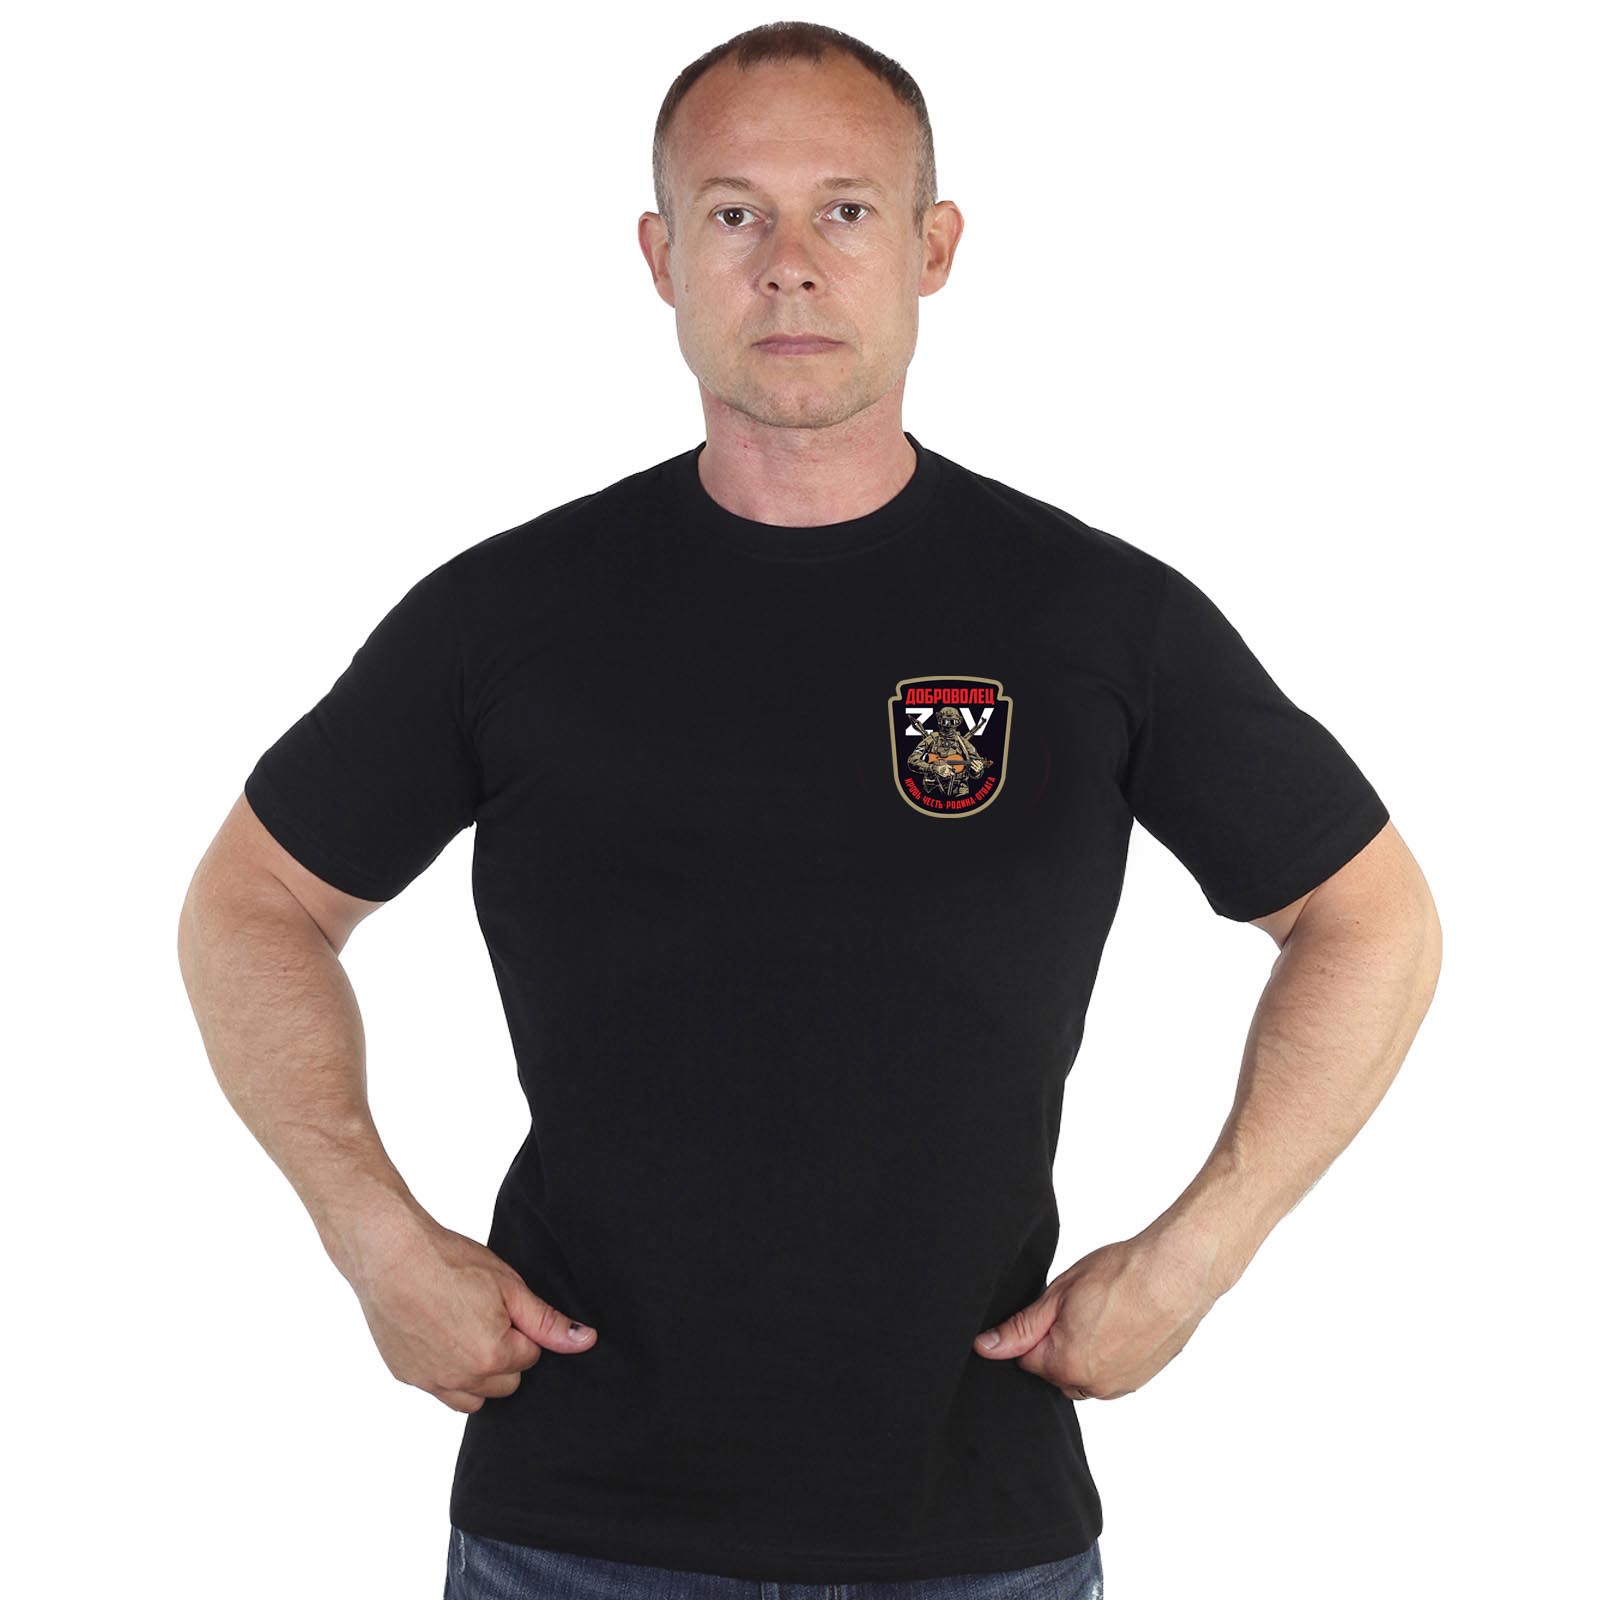 Купить трикотажную черную футболку с термотрансфером Доброволец ZV с доставкой